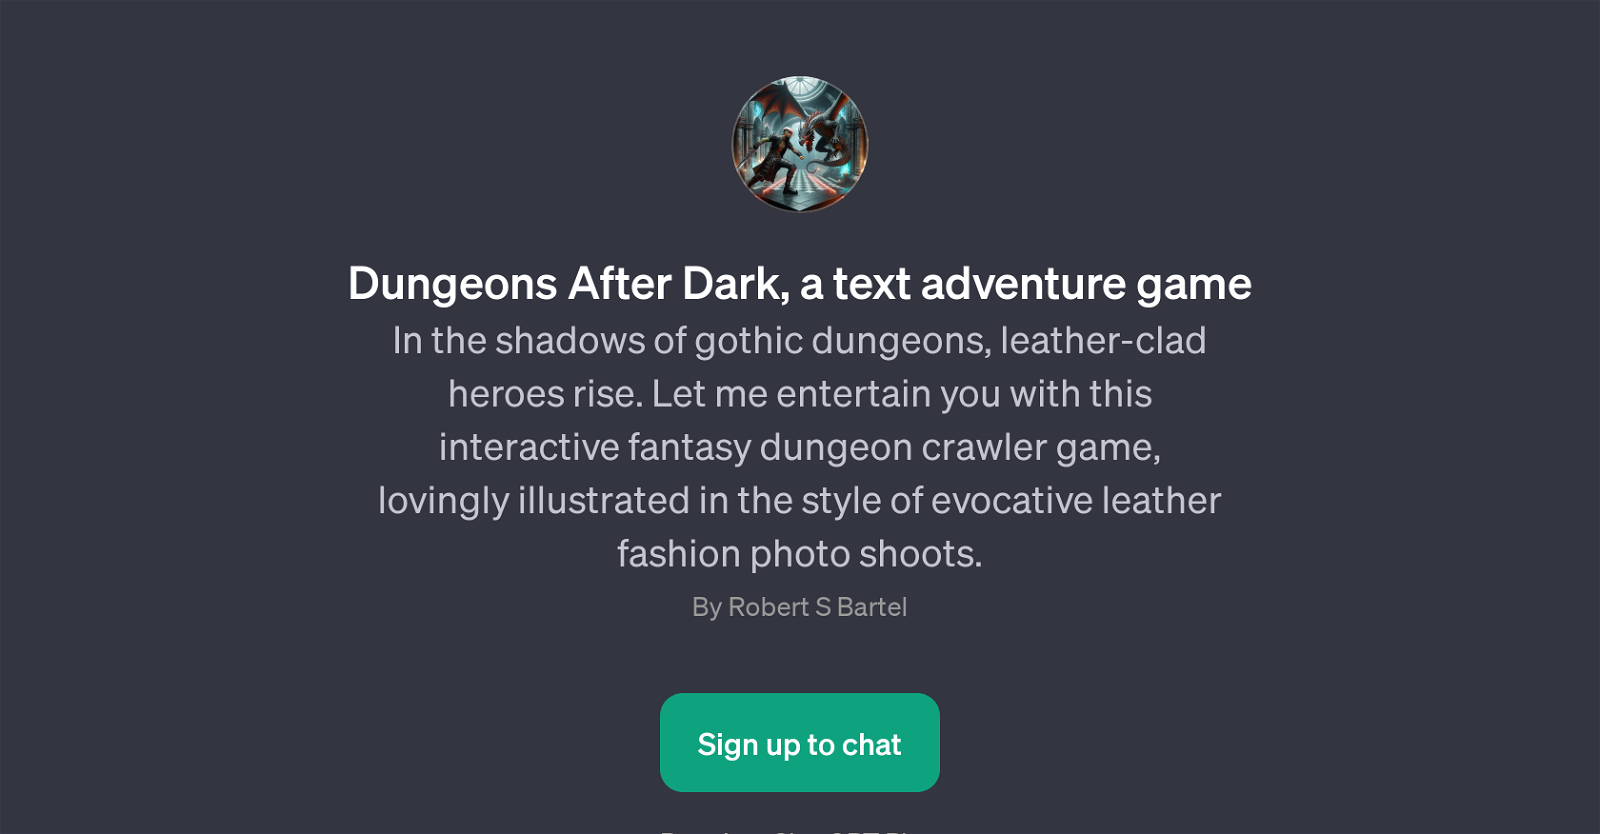 Dungeons After Dark website